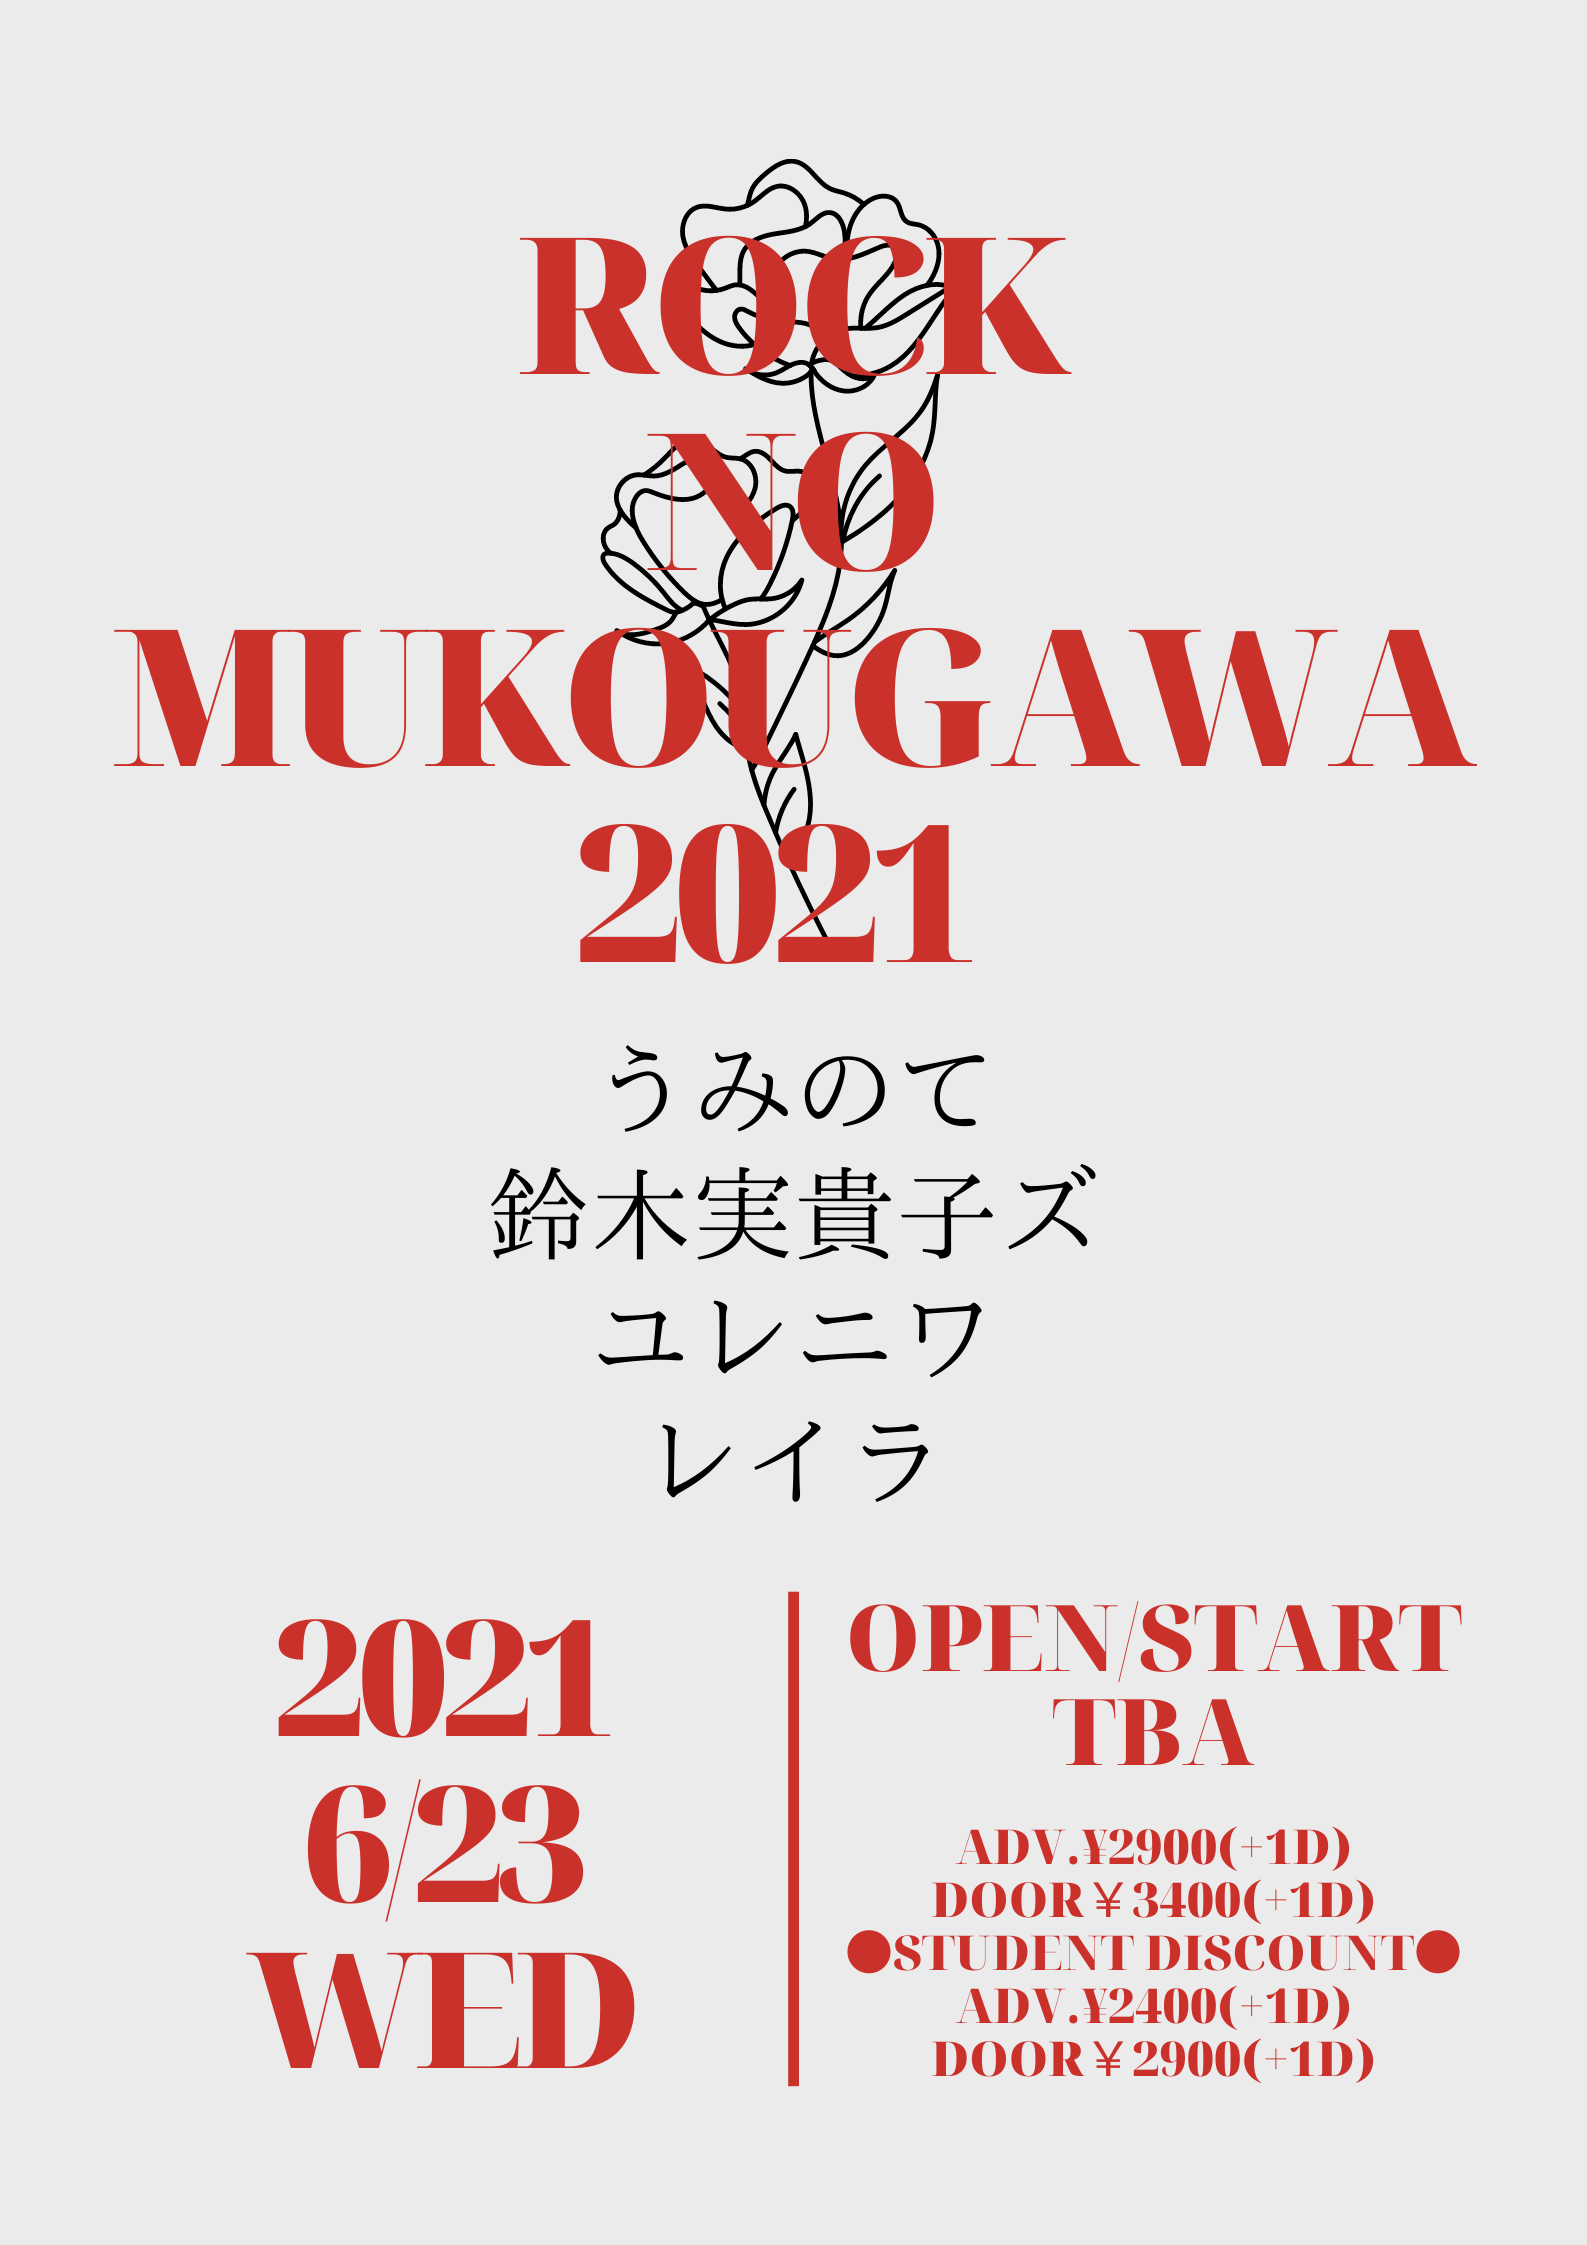 新宿Marble 17th ANNIVERSARY 「ROCKNOMUKOUGAWA2021」